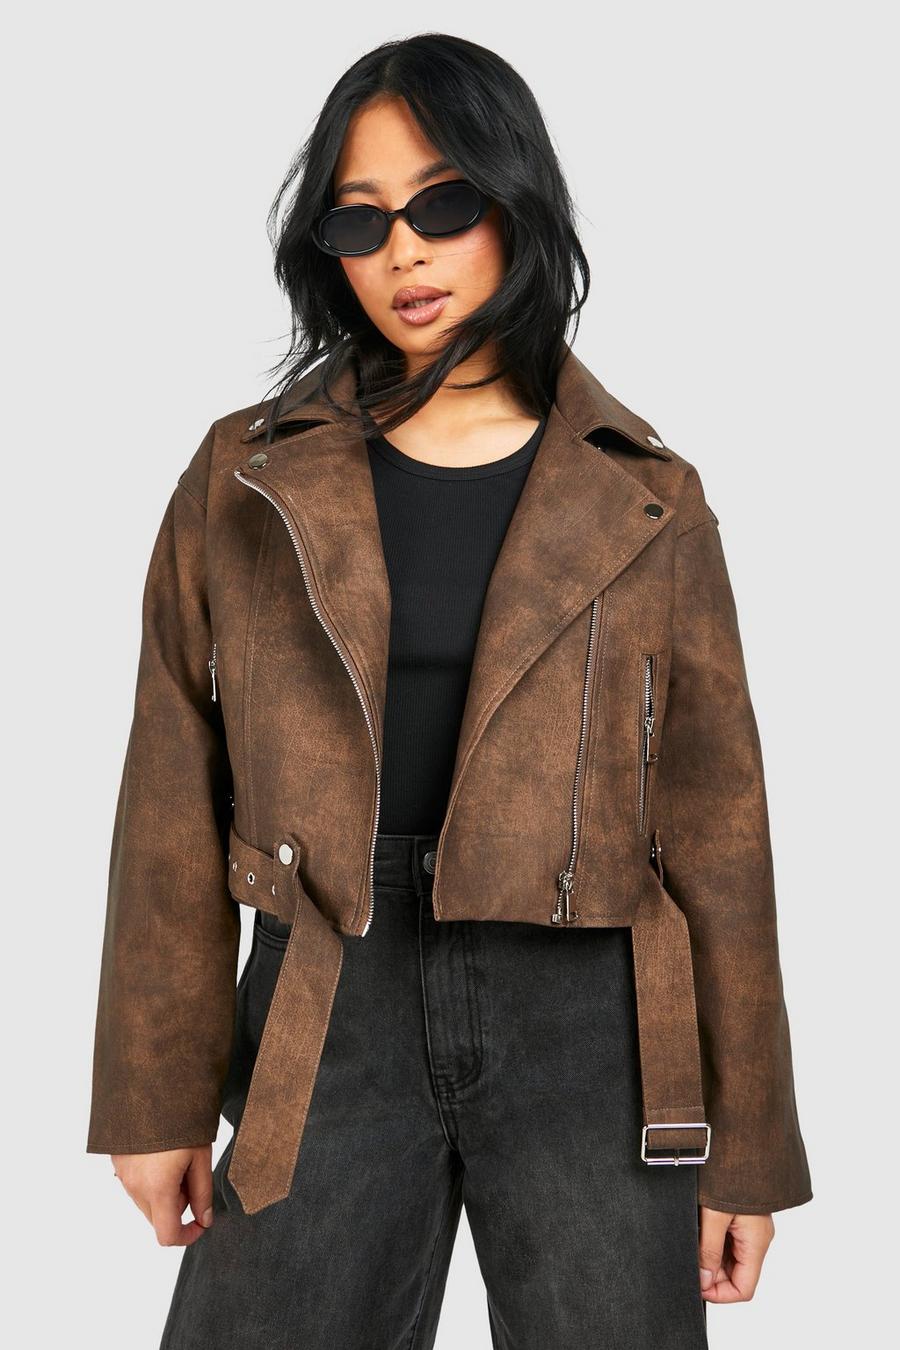 Dark brown Petite Vintage Look Faux Leather Moto Jacket